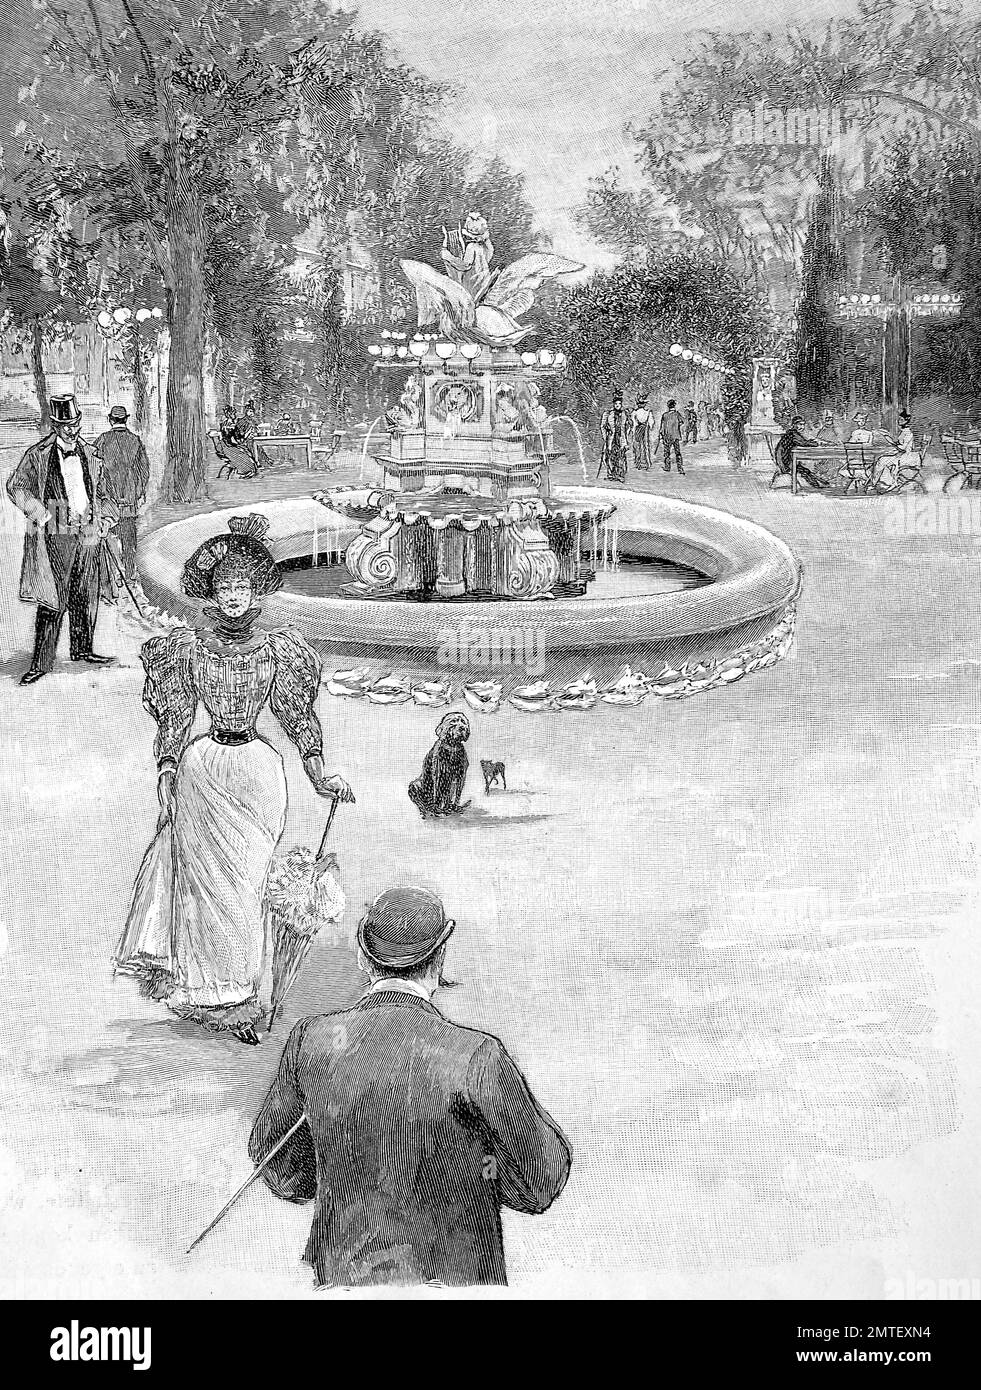 Brunnen im Garten des The Kroll Opernhaus, Theaterbauten, das eine Oper Gebäude in Berlin, Deutschland, 1880, war historische Illustration, Holzschnitt Stockfoto